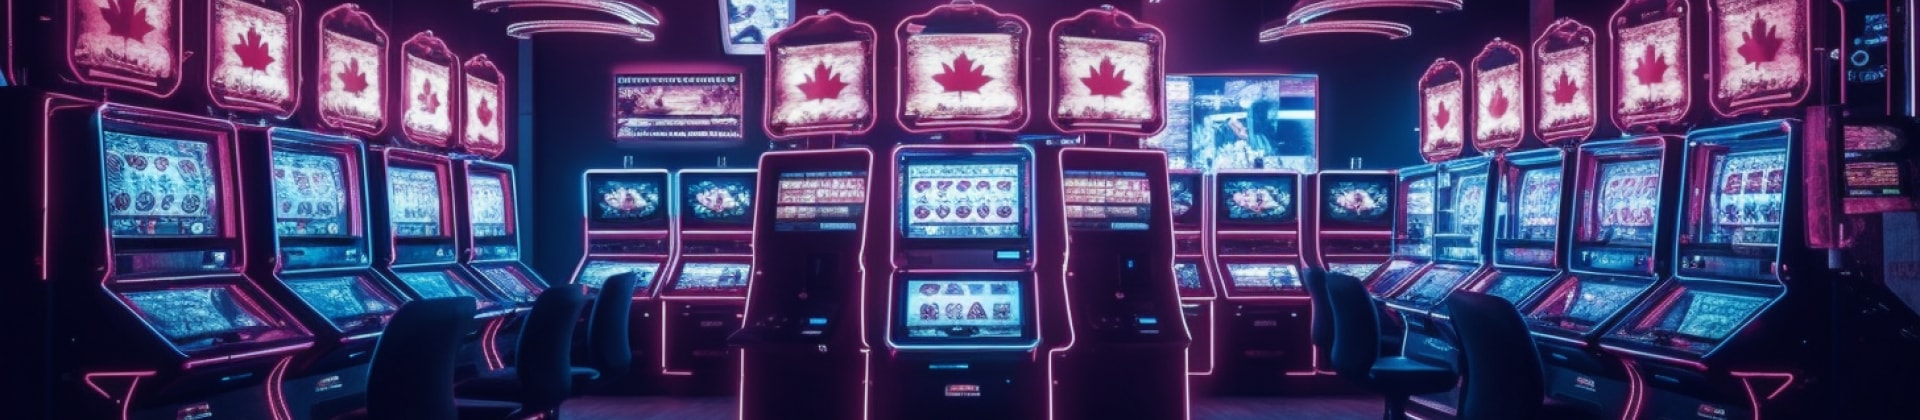 加拿大btc赌场的许可